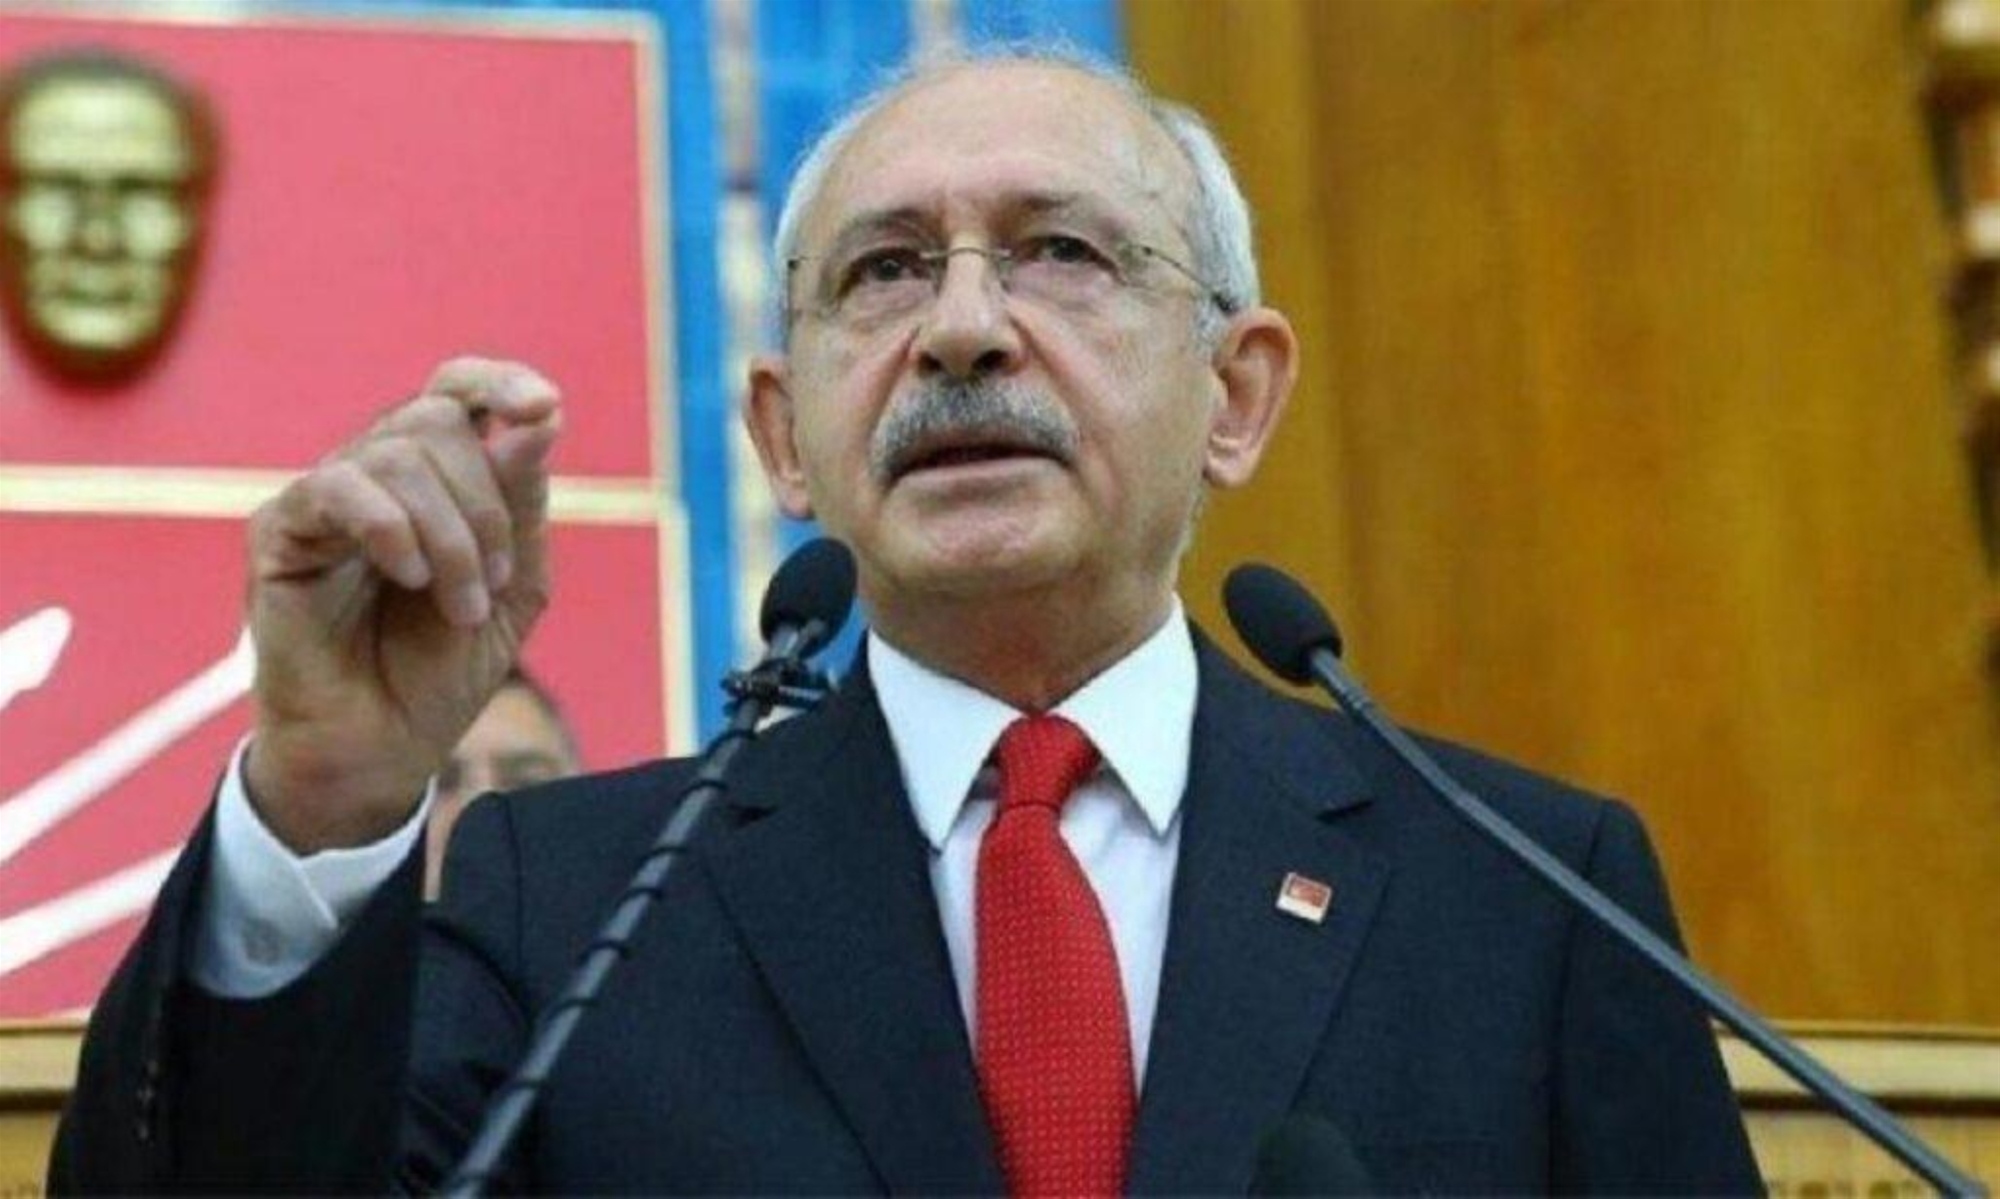 Τουρκικές εκλογές: Νέα δημοσκόπηση δίνει προβάδισμα στον Κεμάλ Κιλιτσντάρογλου με 5,5%